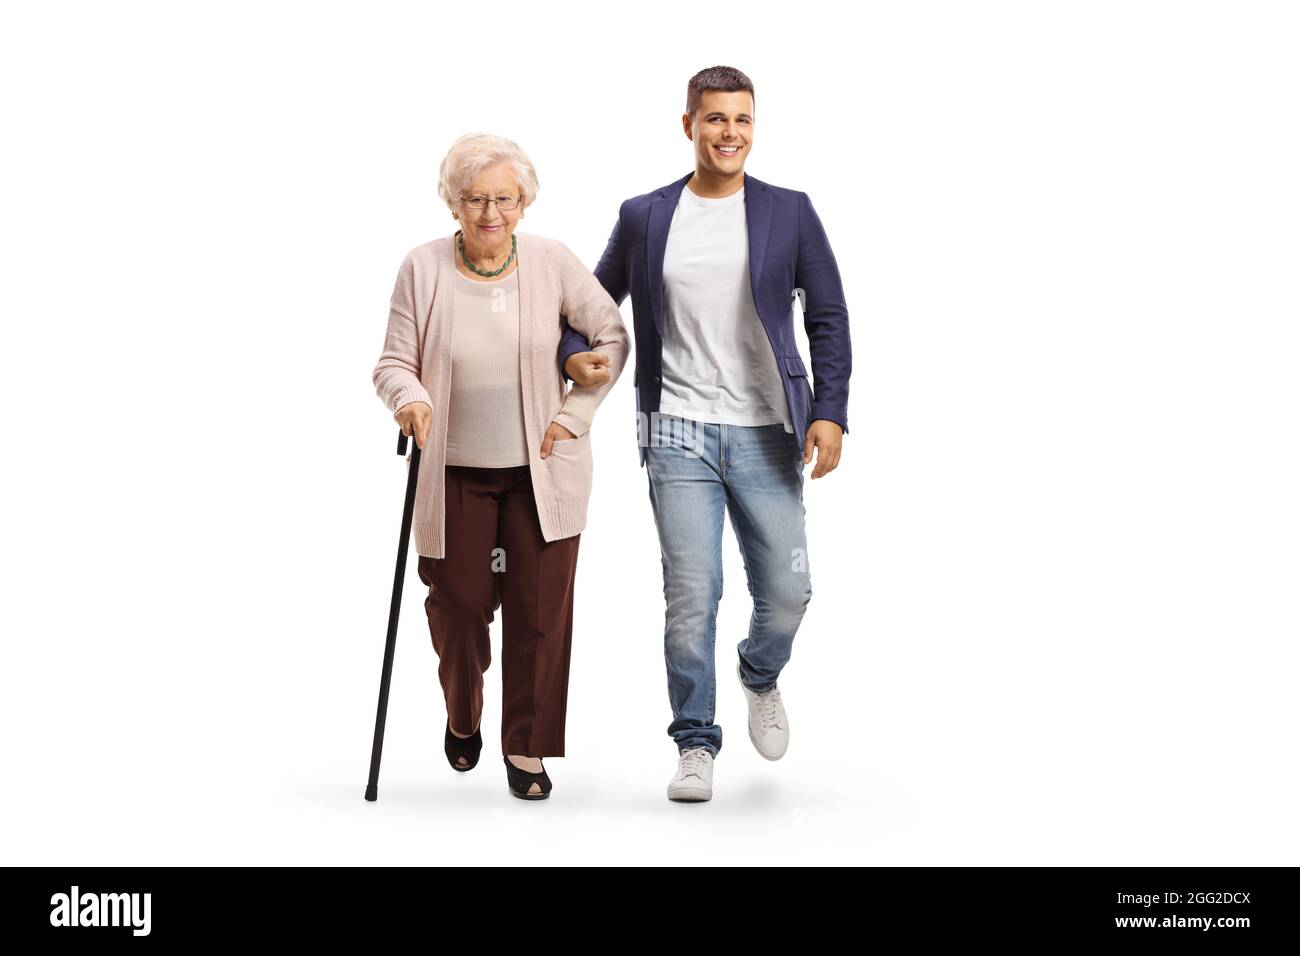 Ganzkörperportrait eines jungen Mannes, der einer älteren Dame mit einem Gehstock hilft, der auf weißem Hintergrund isoliert ist Stockfoto